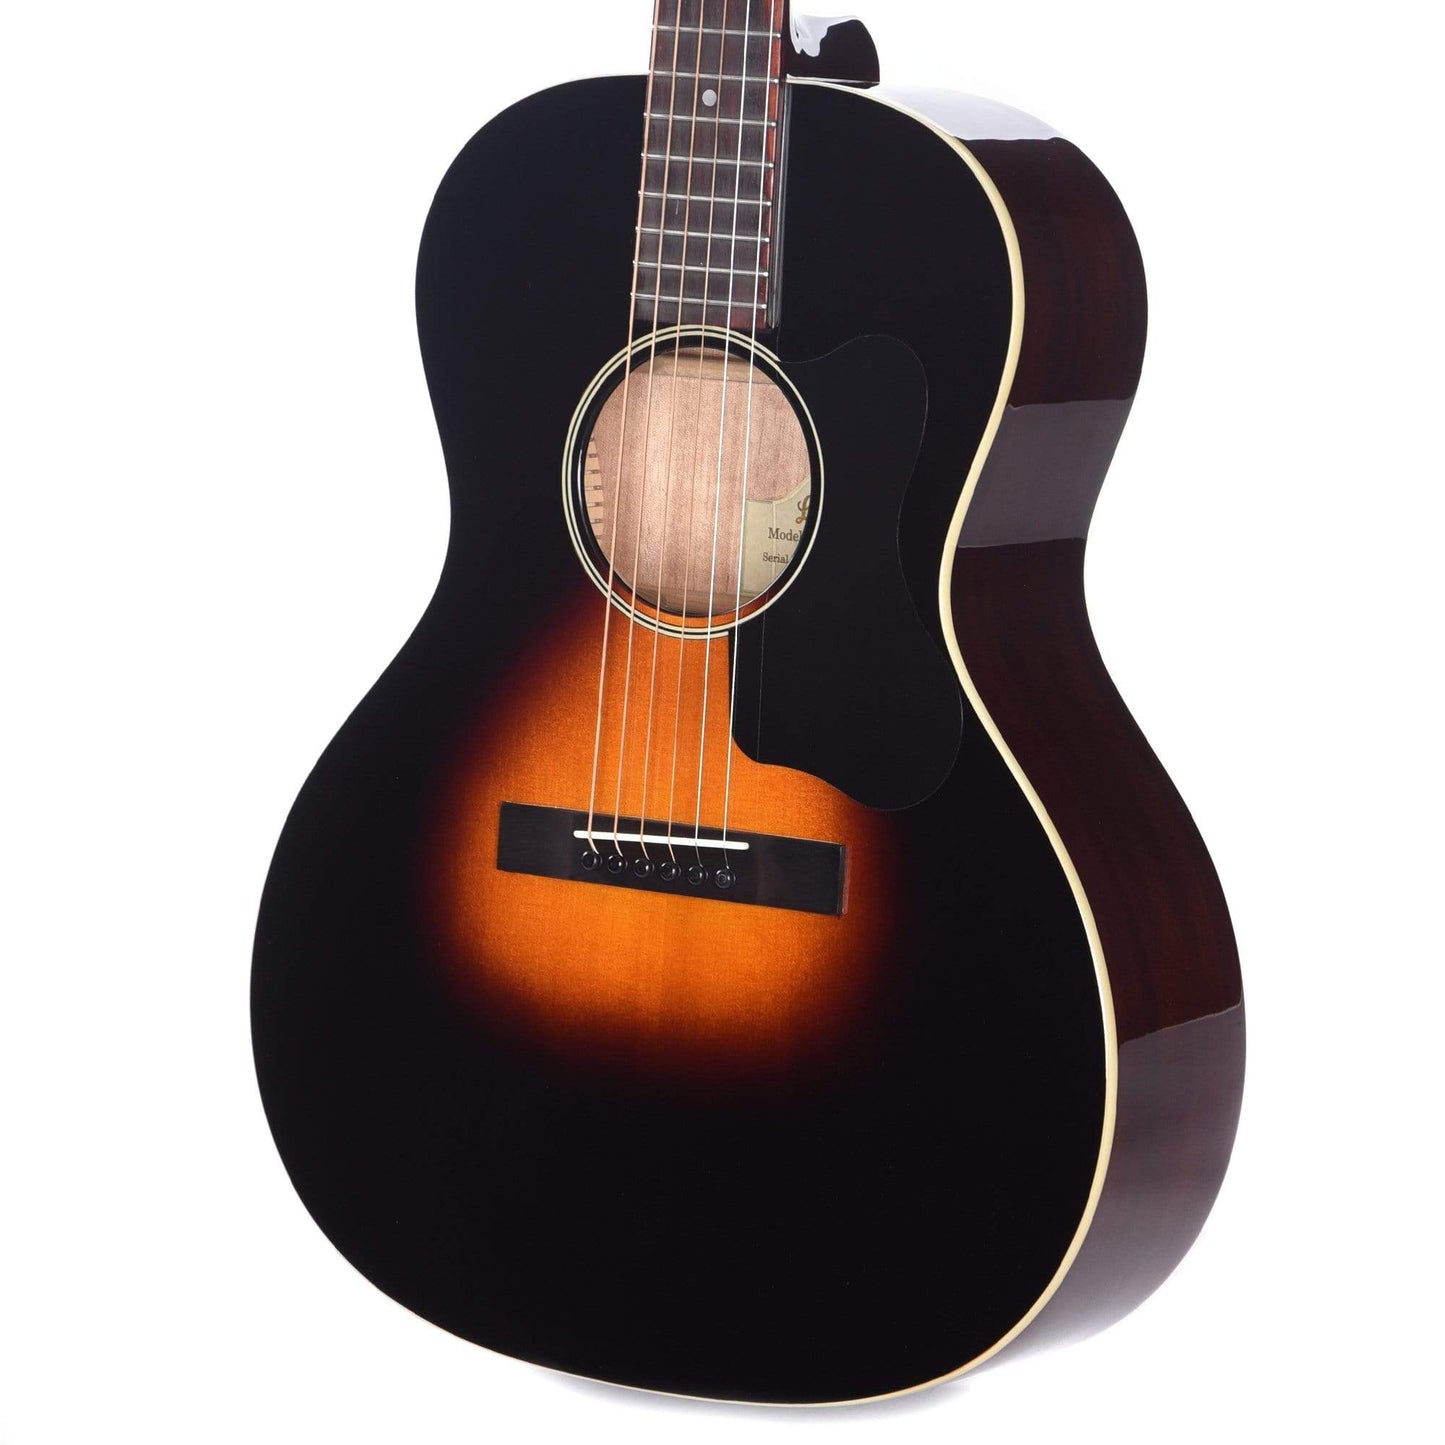 Loar L-00 Flat Top Vintage Sunburst Acoustic Guitars / Parlor